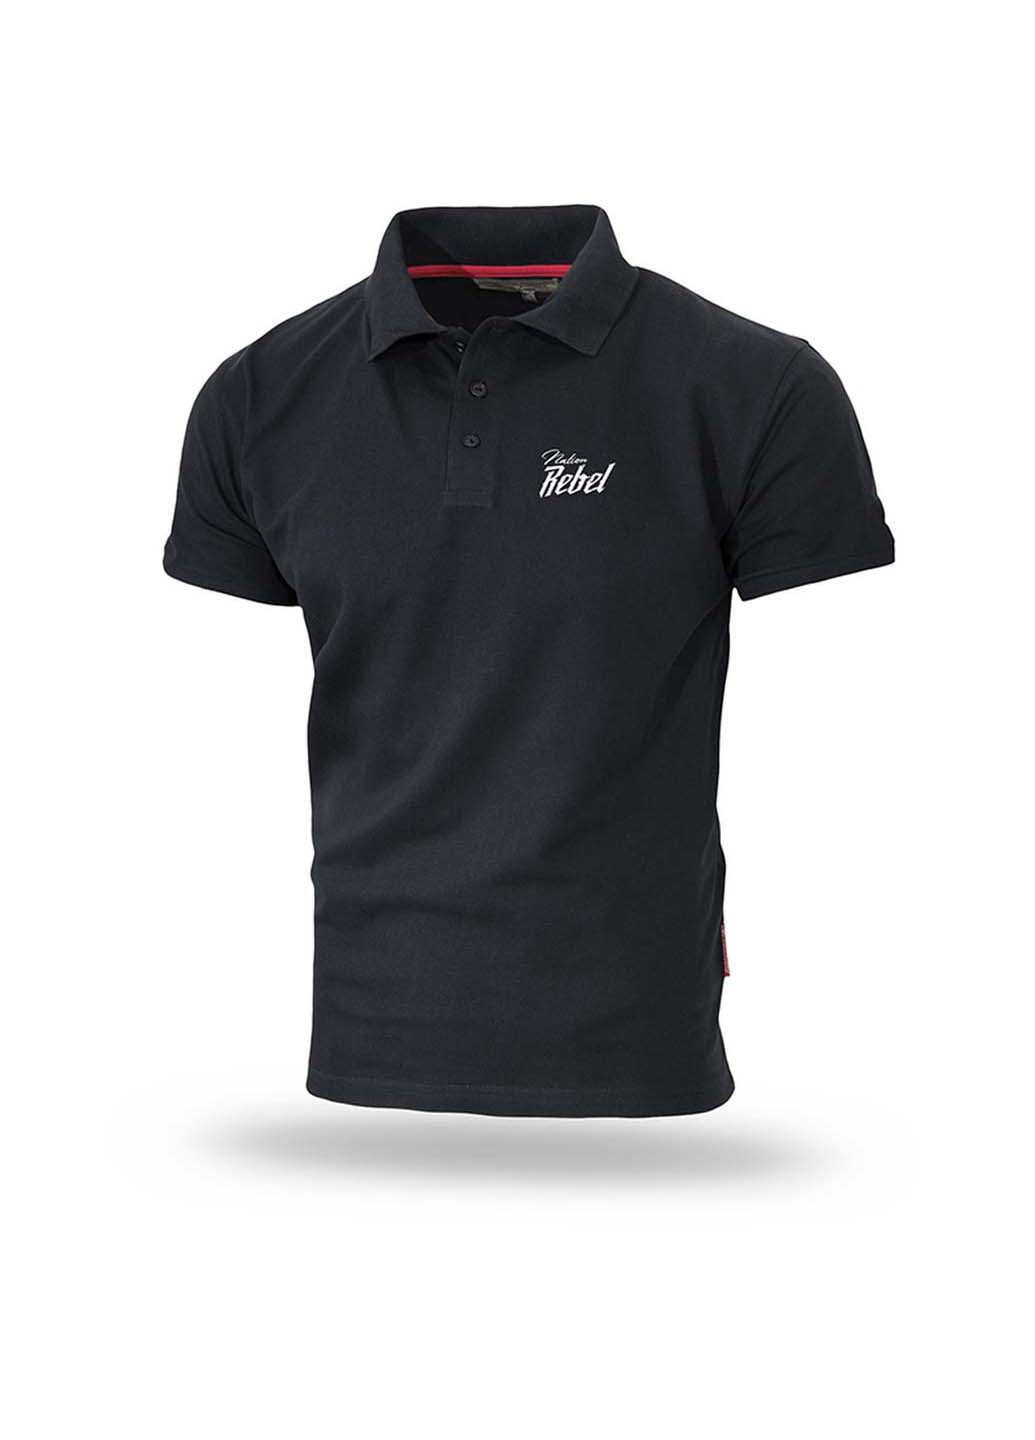 Черная футболка-футболка поло для мужчин Dobermans Aggressive